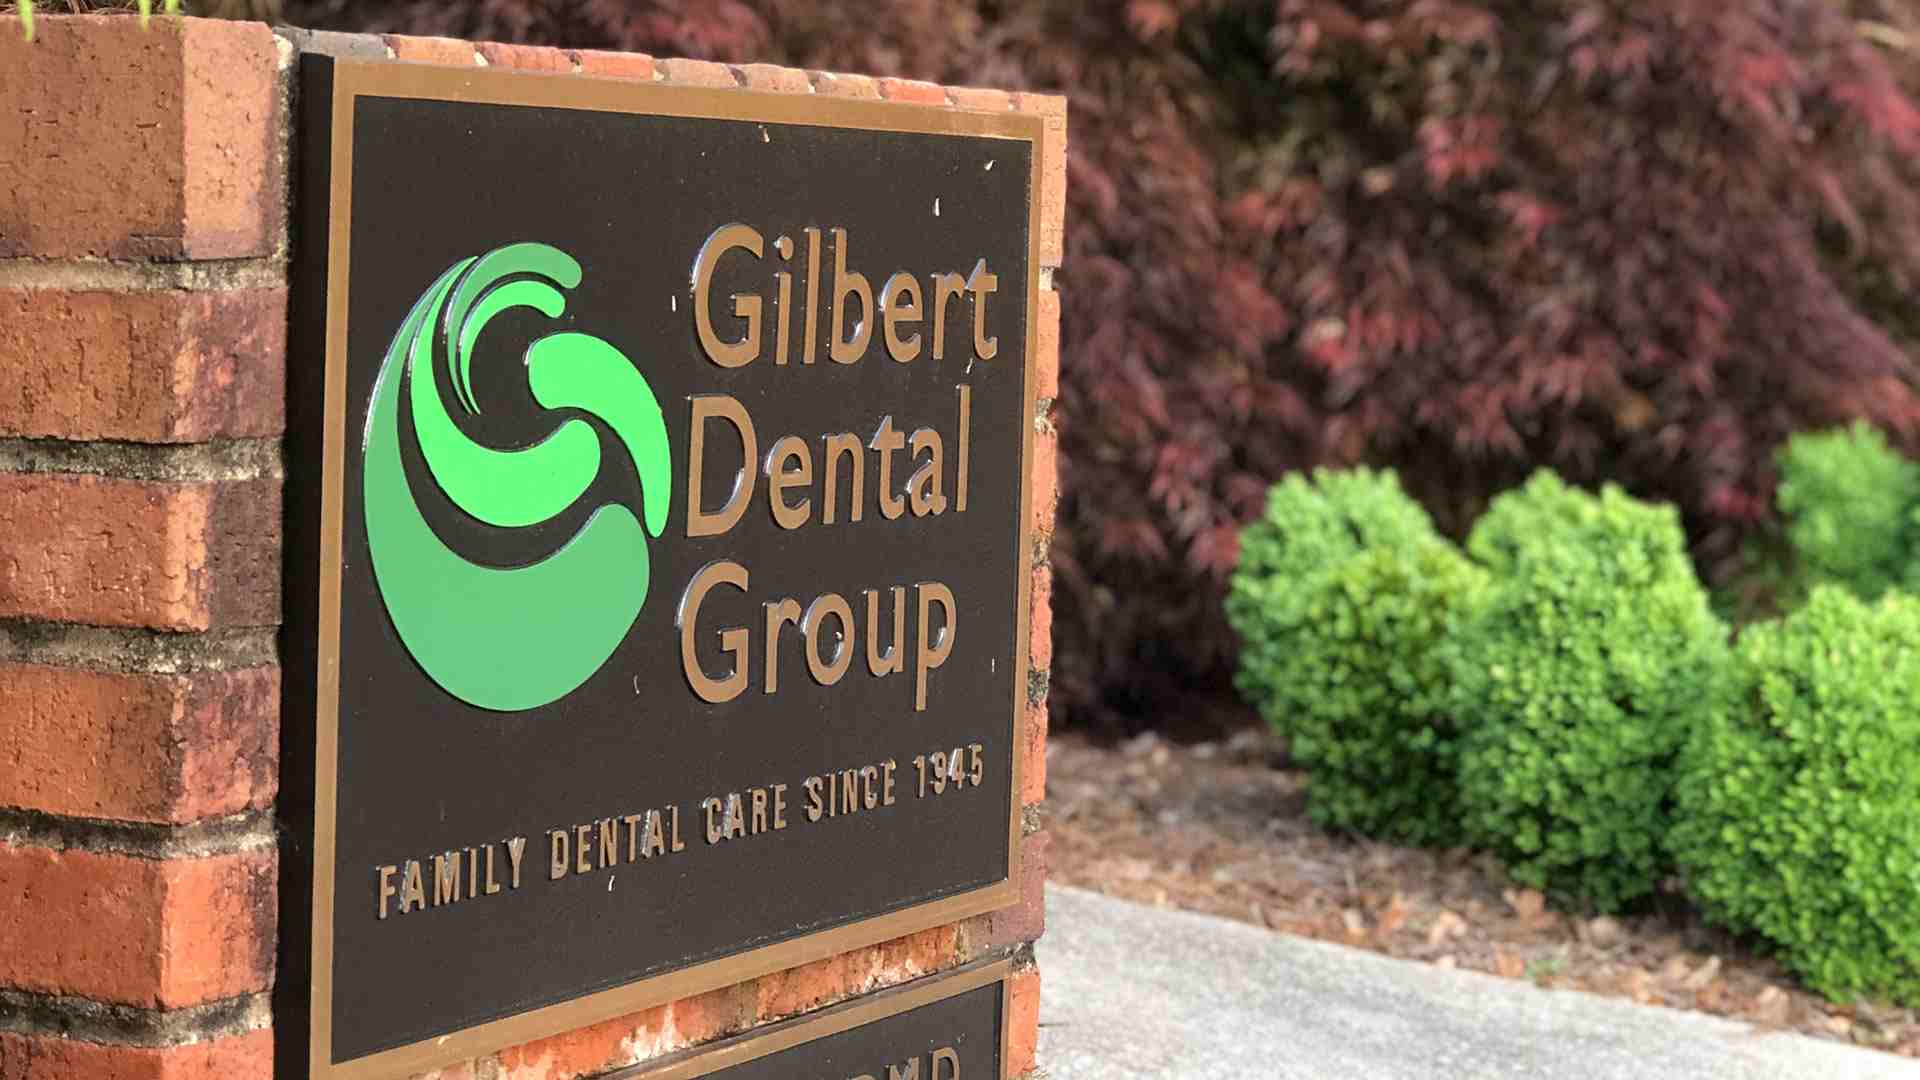 Gilbert Dental Group in Greenville